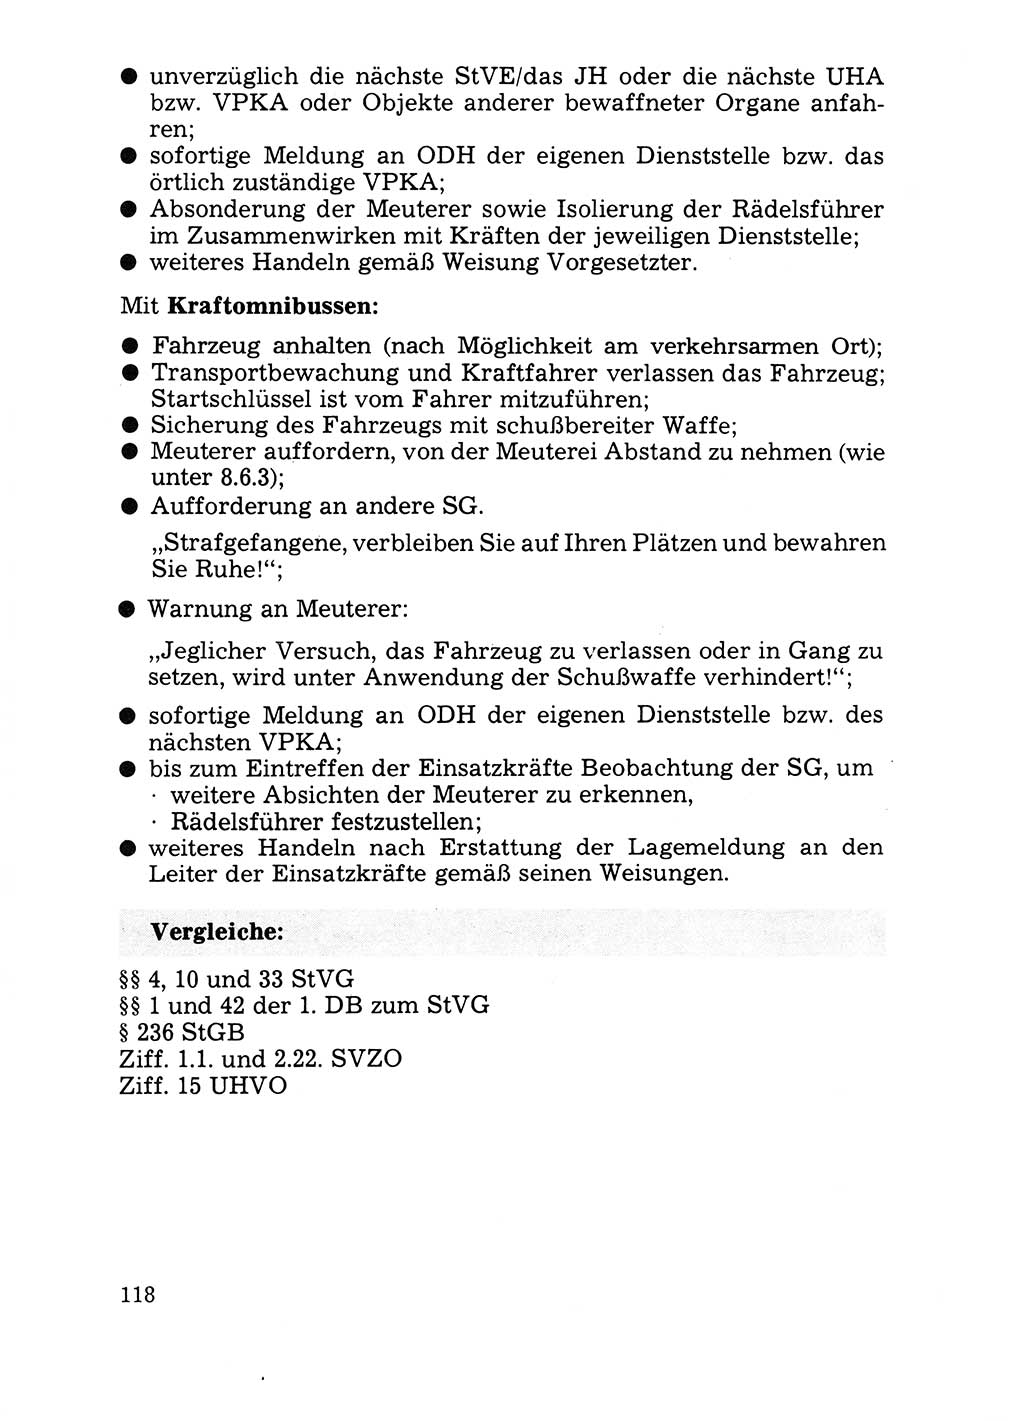 Handbuch für operative Dienste, Abteilung Strafvollzug (SV) [Ministerium des Innern (MdI) Deutsche Demokratische Republik (DDR)] 1981, Seite 118 (Hb. op. D. Abt. SV MdI DDR 1981, S. 118)